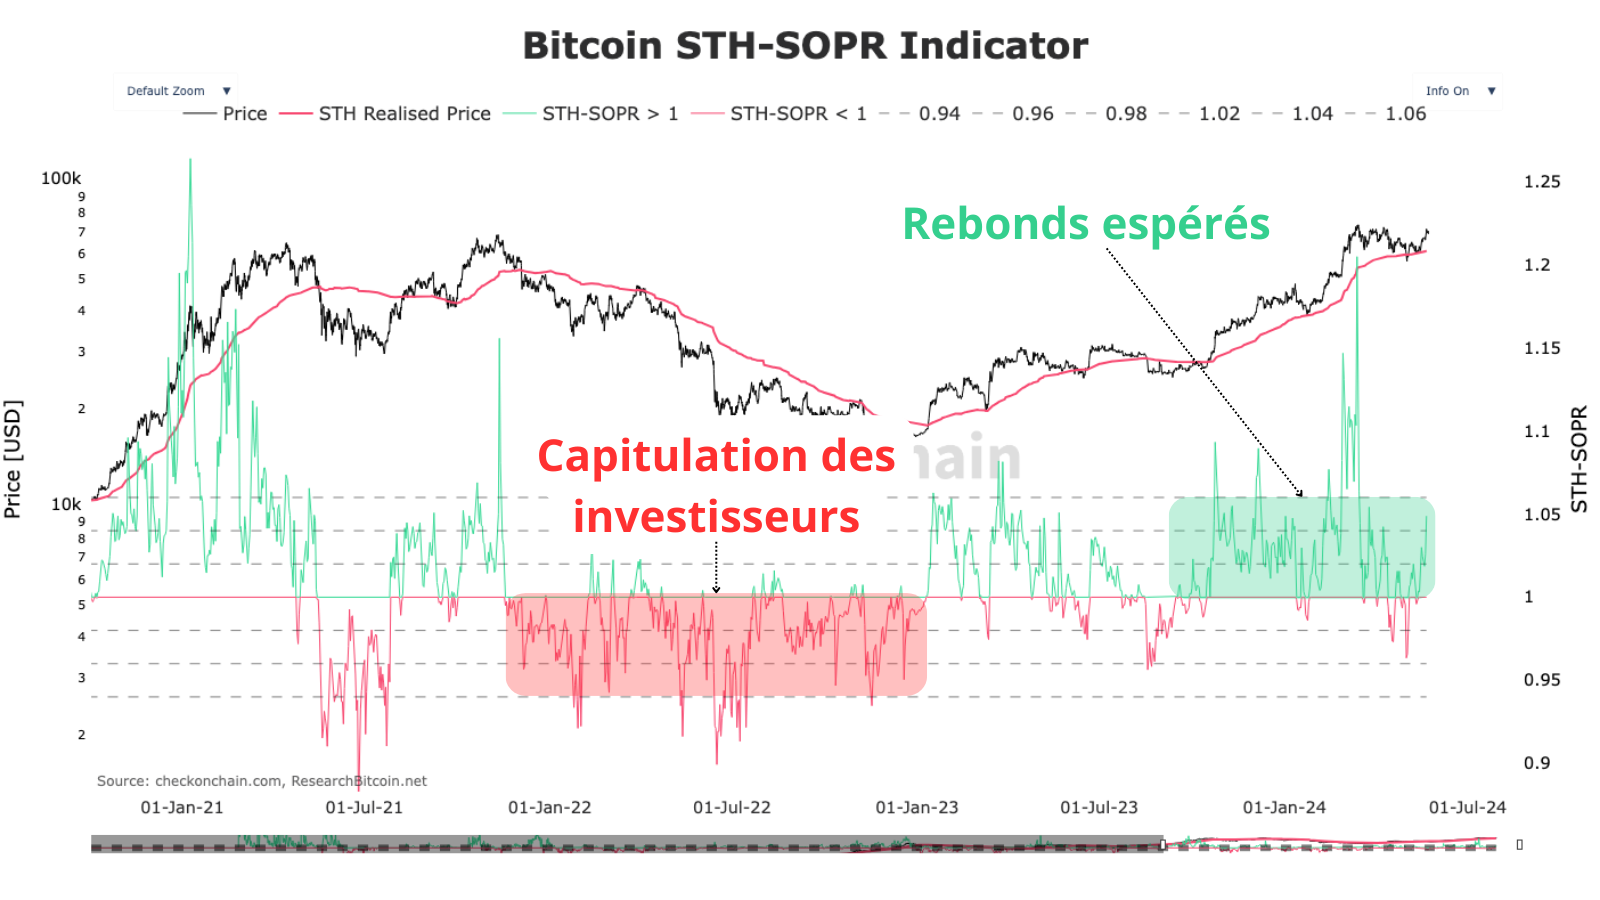 Le cycle se déroule comme prévu, les investisseurs restent confiants, à chaque correction un rebond est confirmé par le SOPR